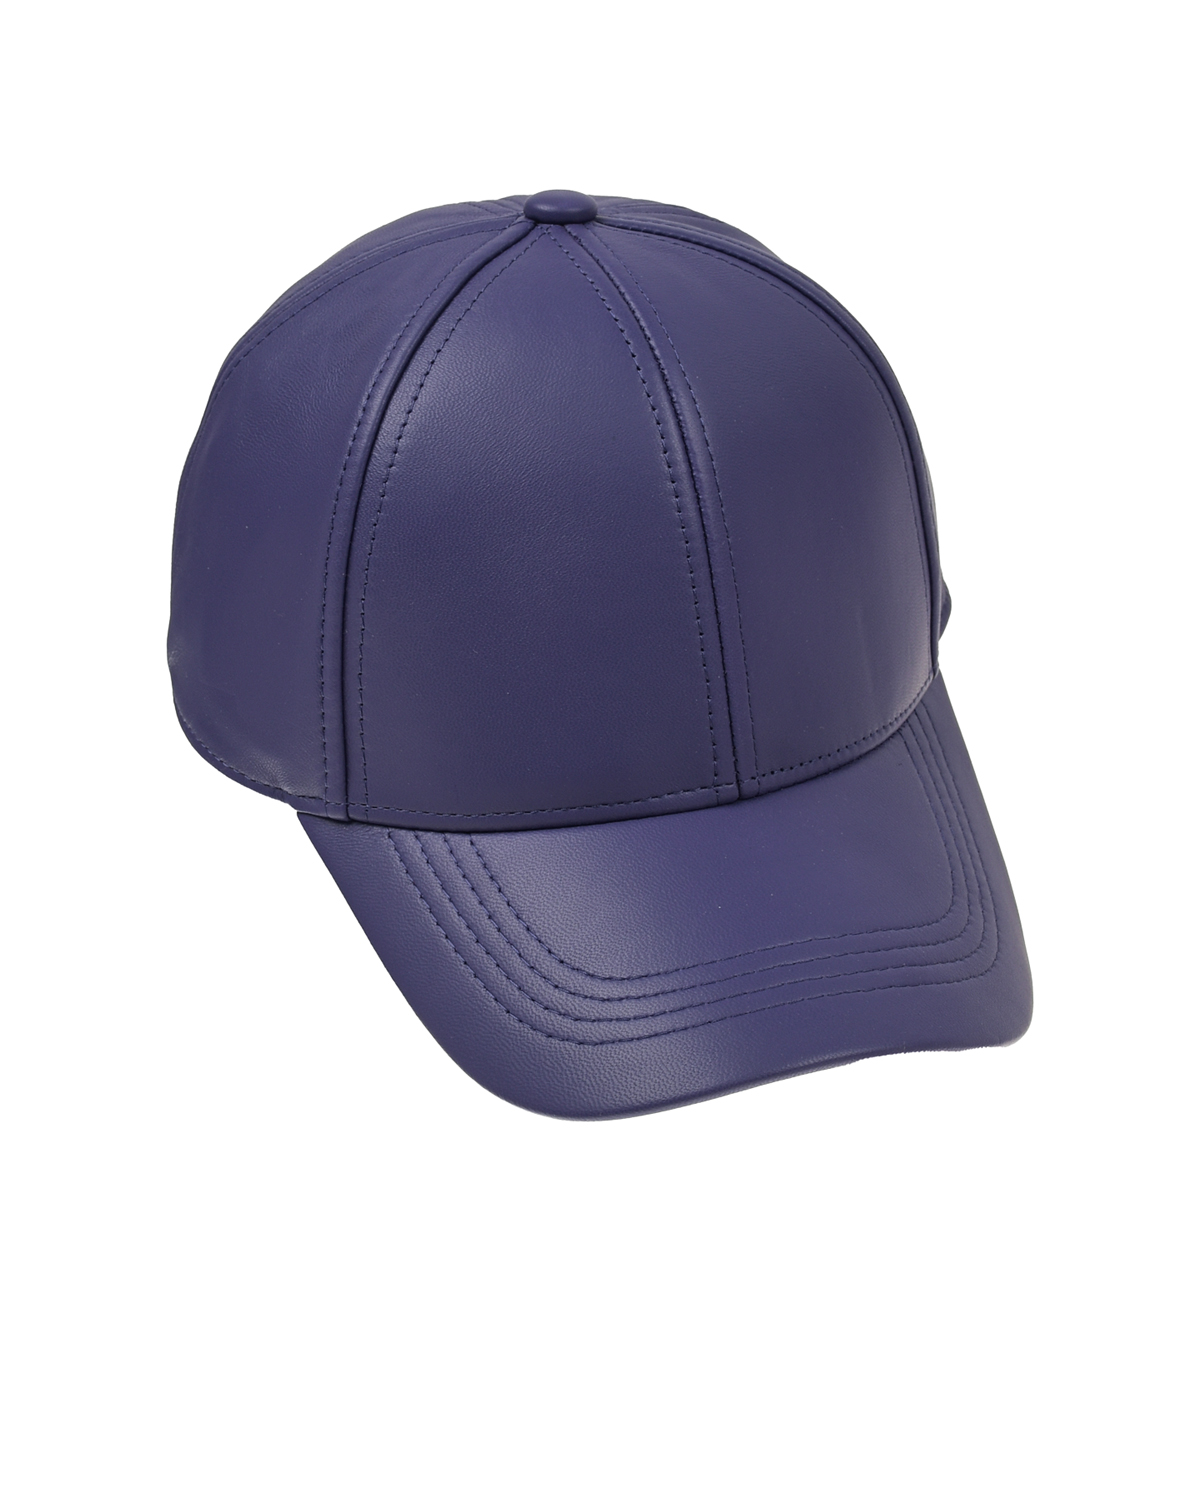 Фиолетовая кепка из натуральной кожи Yves Salomon, размер unica, цвет фиолетовый